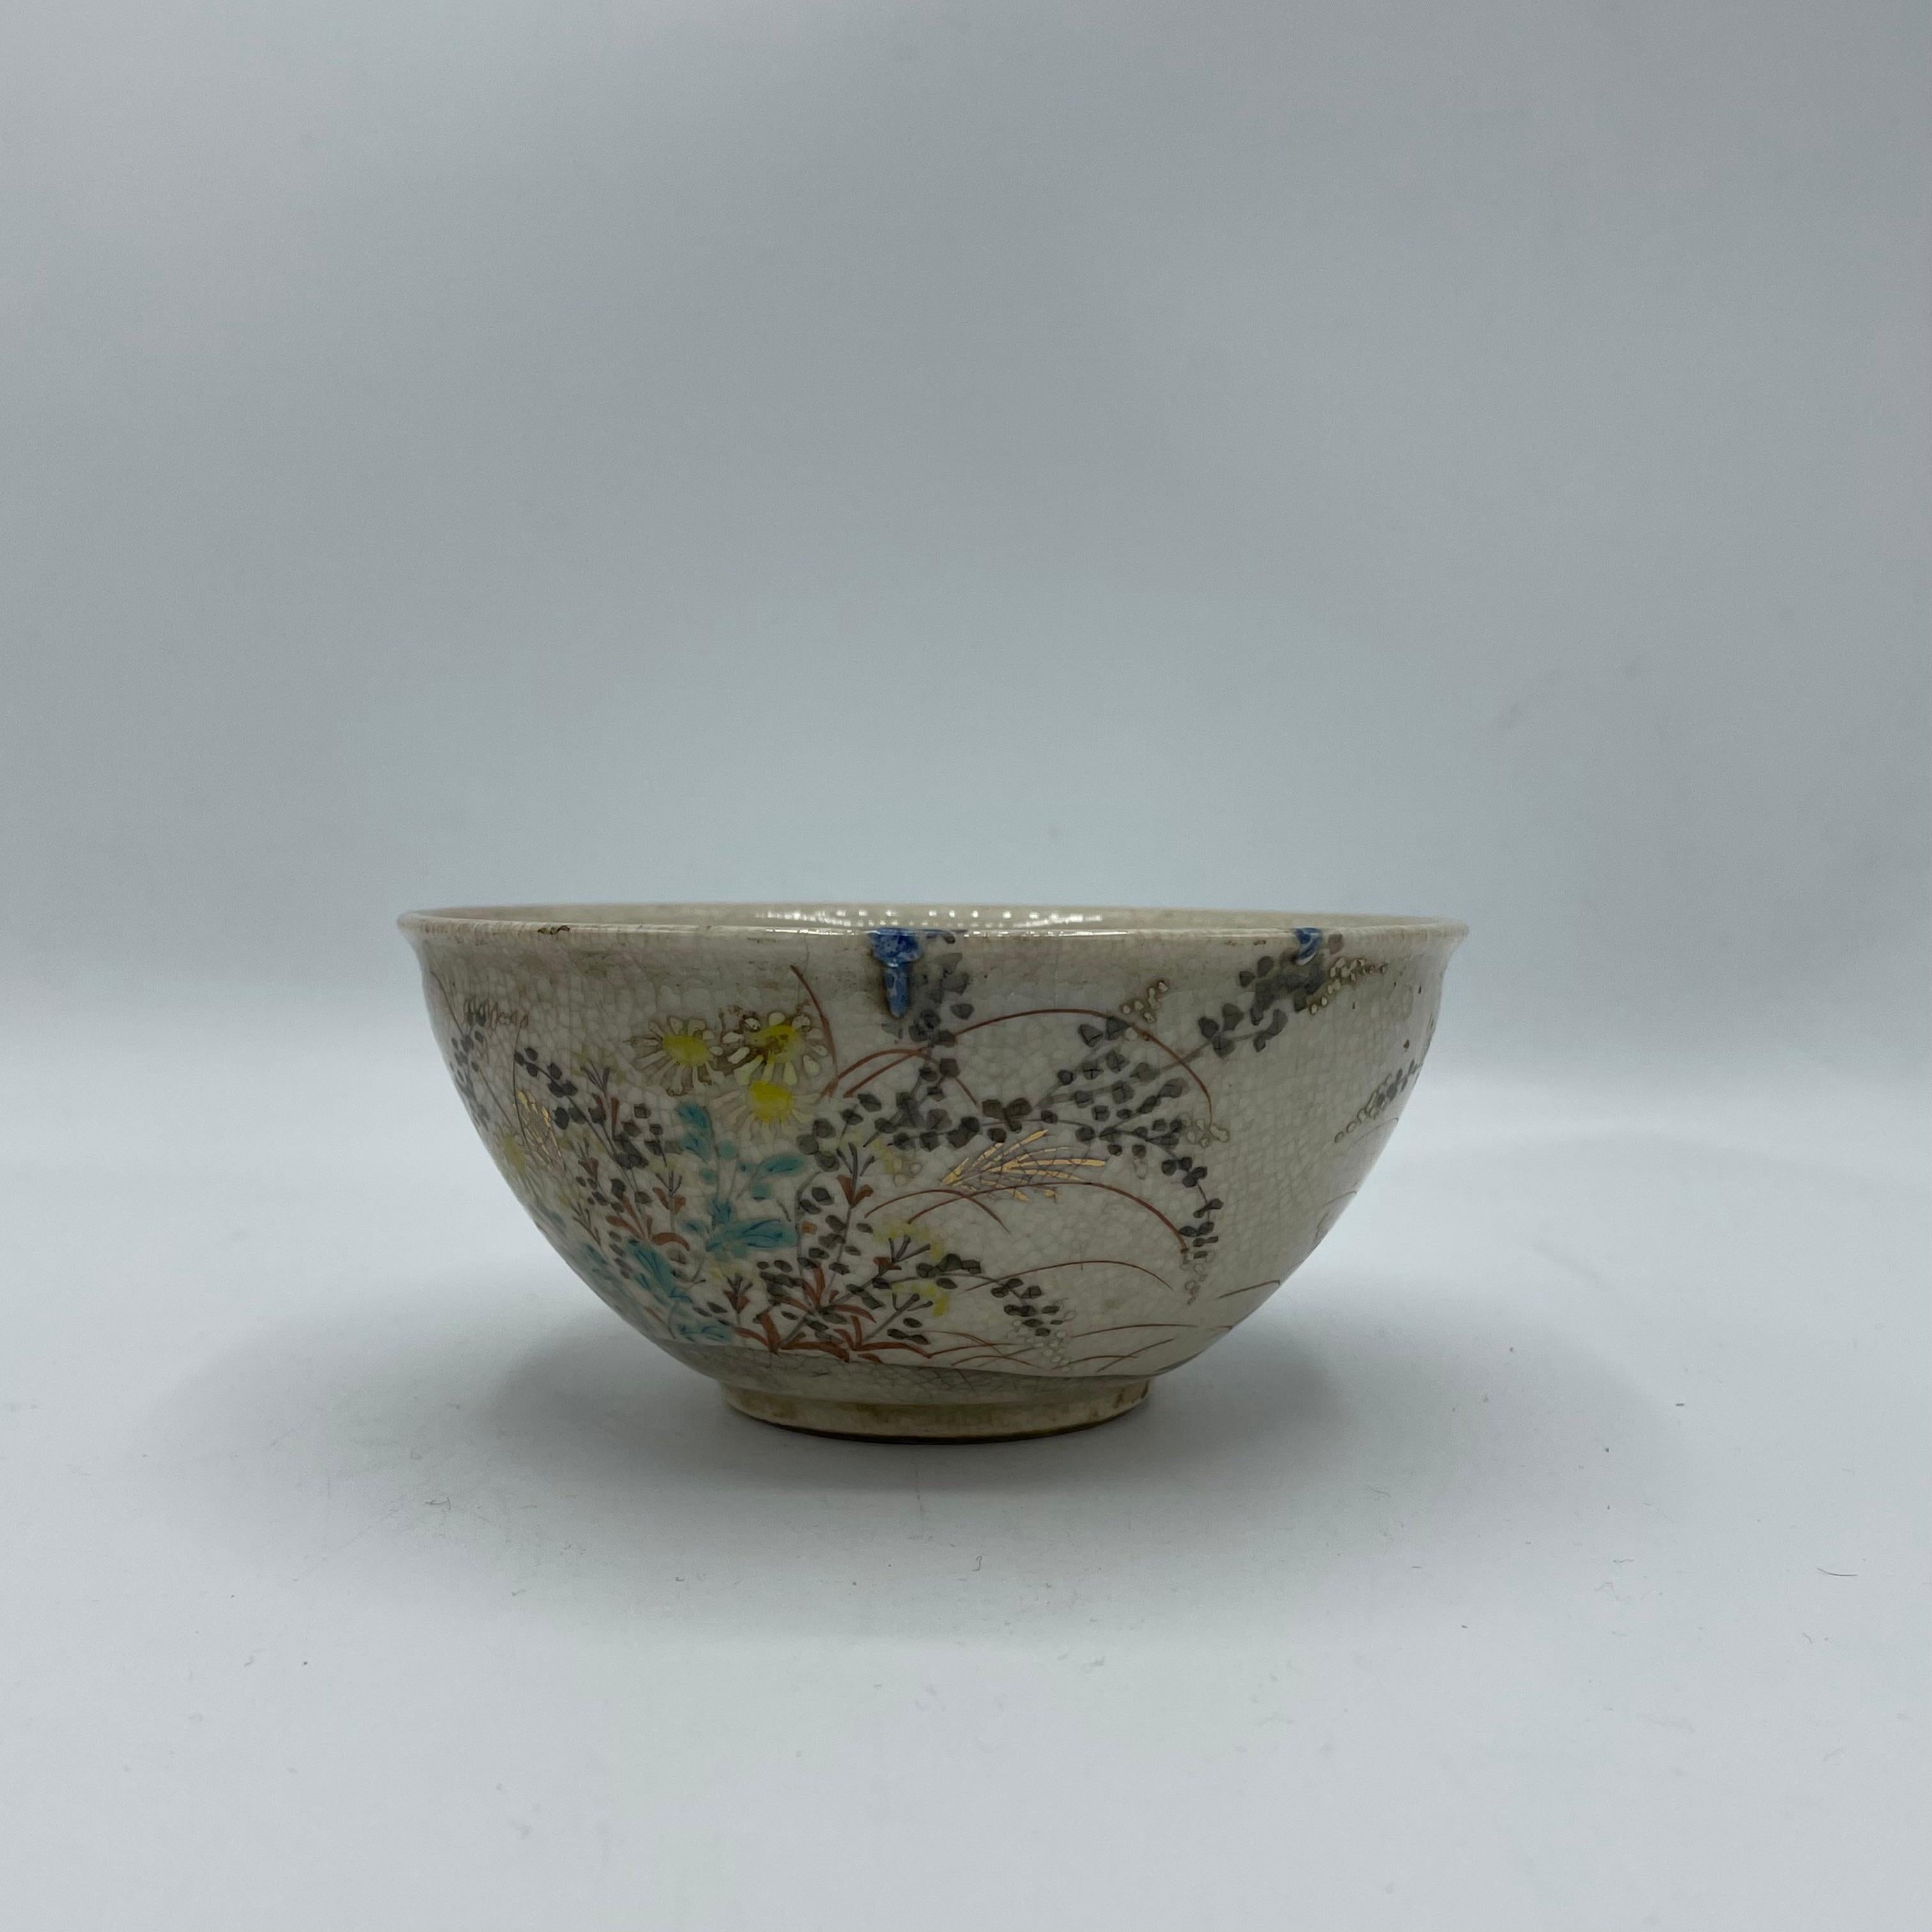 Il s'agit d'un bol à matcha pour la cérémonie du thé. Ce bol a été fabriqué au Japon dans les années 1960, à l'ère Showa.
Il est fabriqué en porcelaine. 
Il est en bon état mais présente quelques rayures.

Dimensions : 12 x12 x H5,4 cm